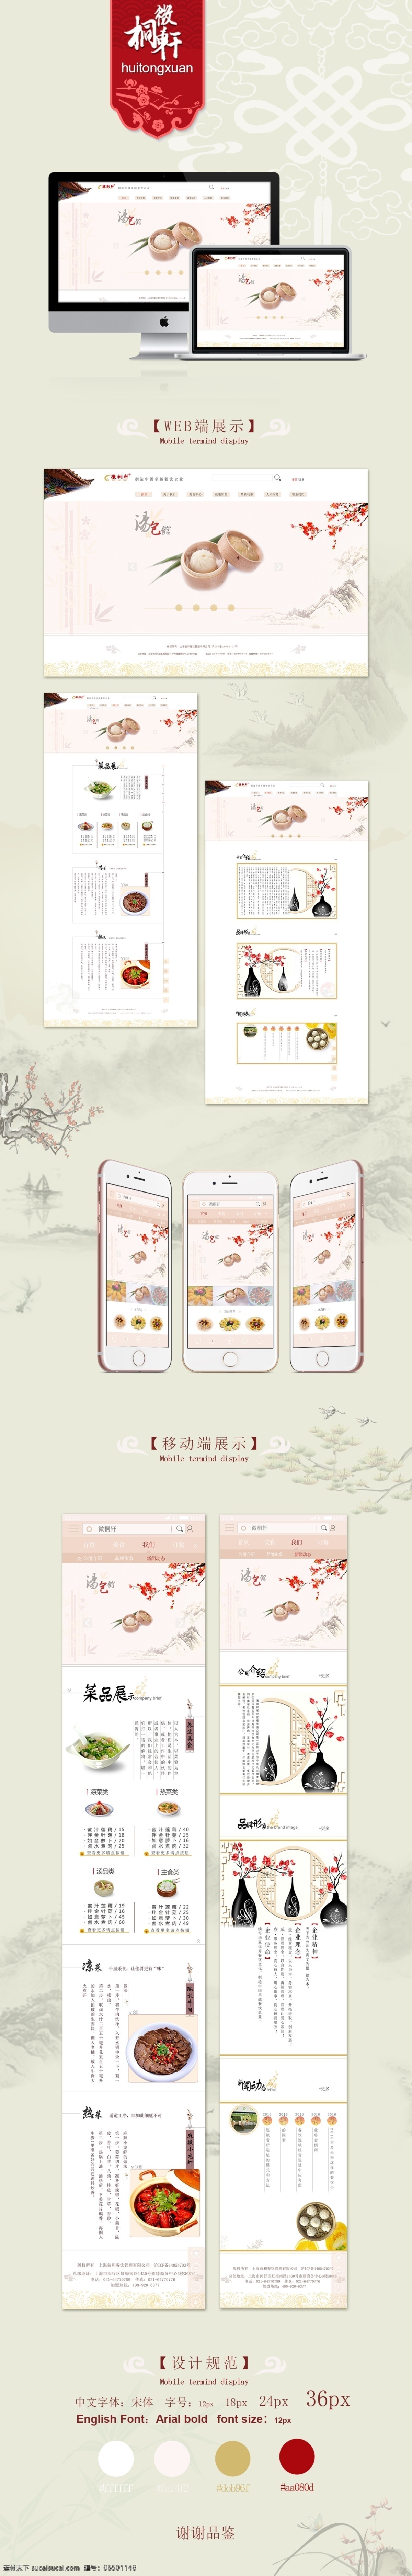 唯美 小清 新手机 app 图标 httpt cnzhnamhr 白色